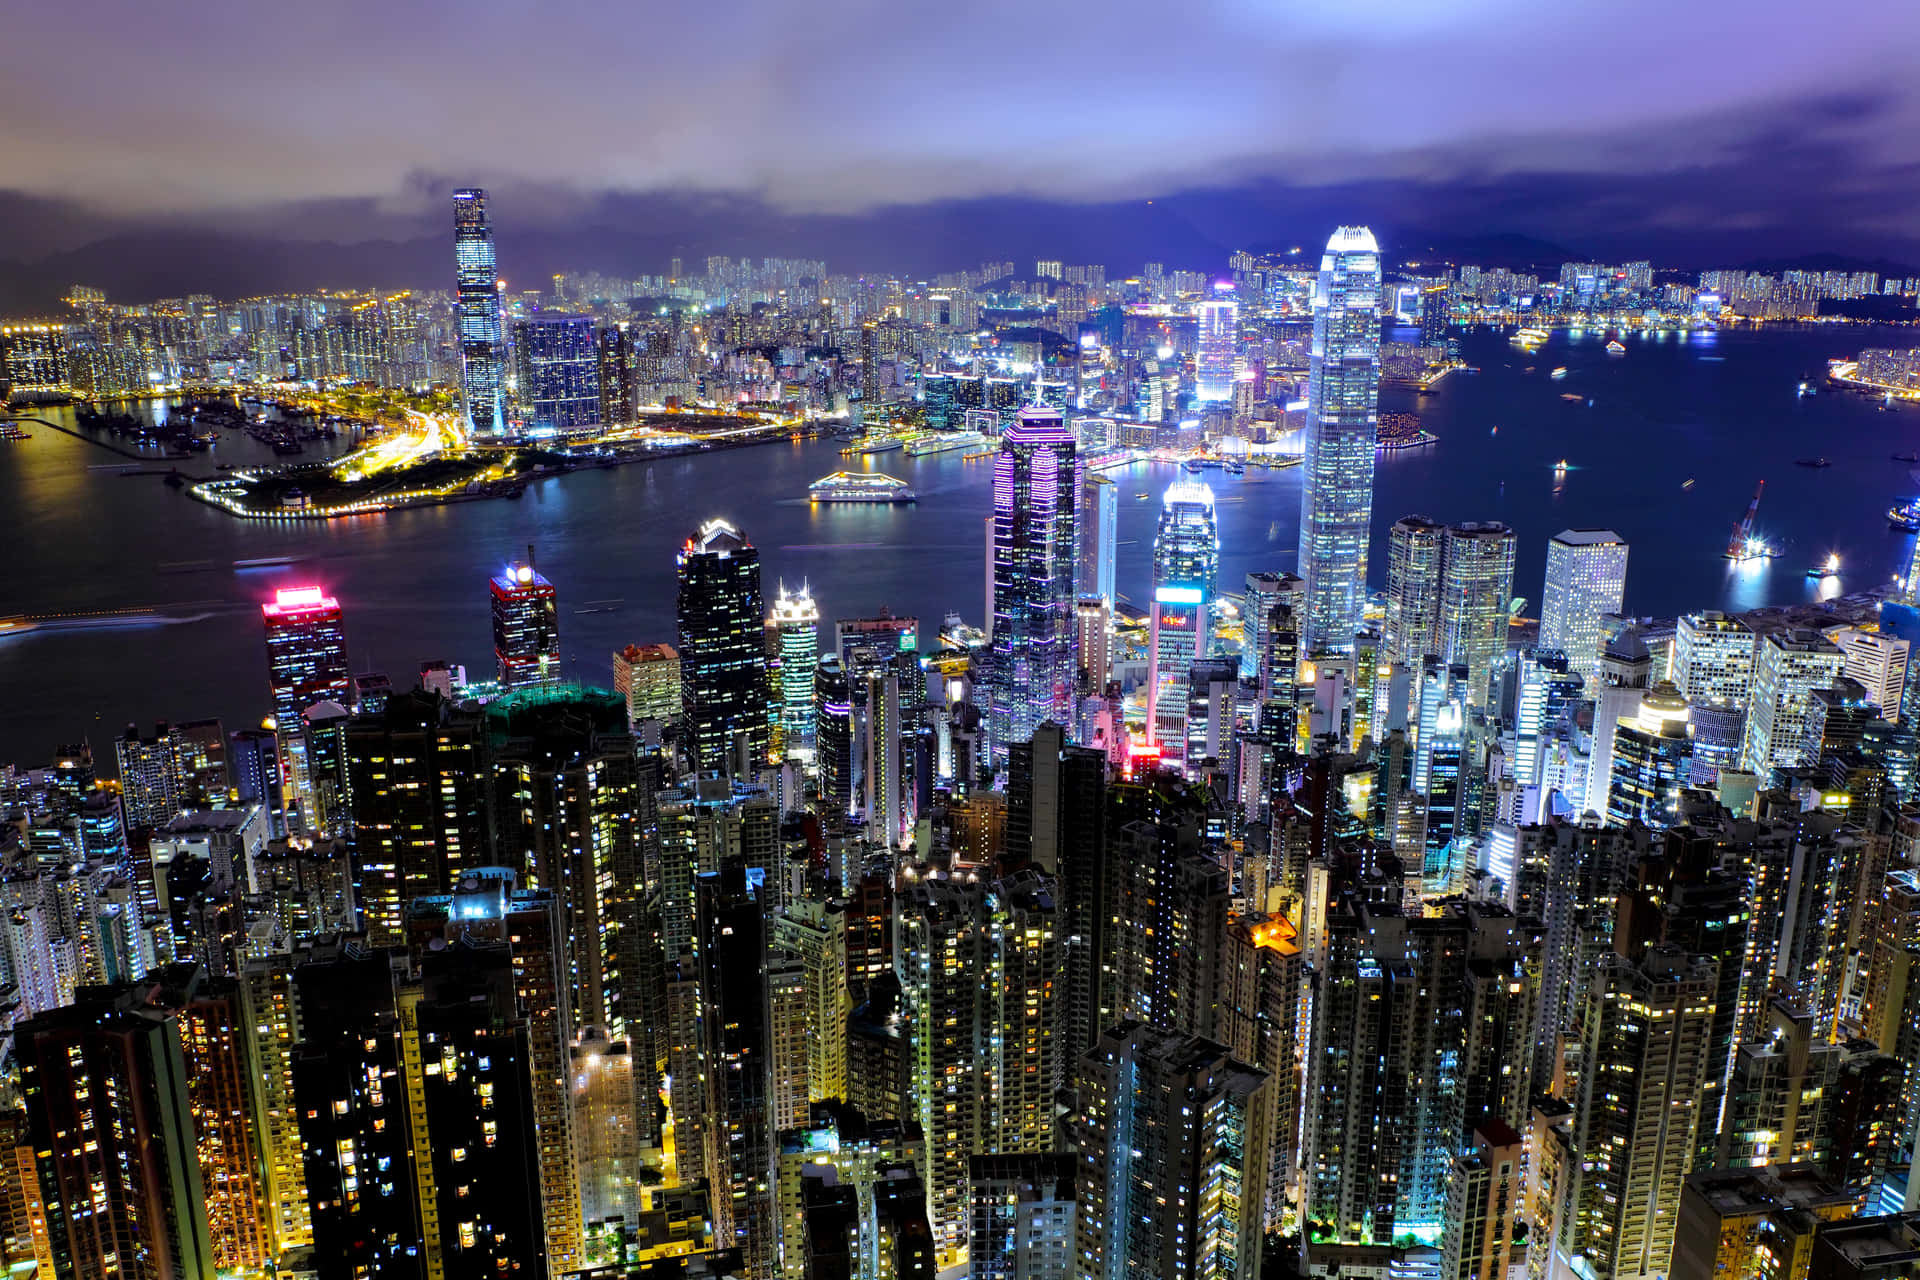 Stunning Skyline of Hong Kong at Night